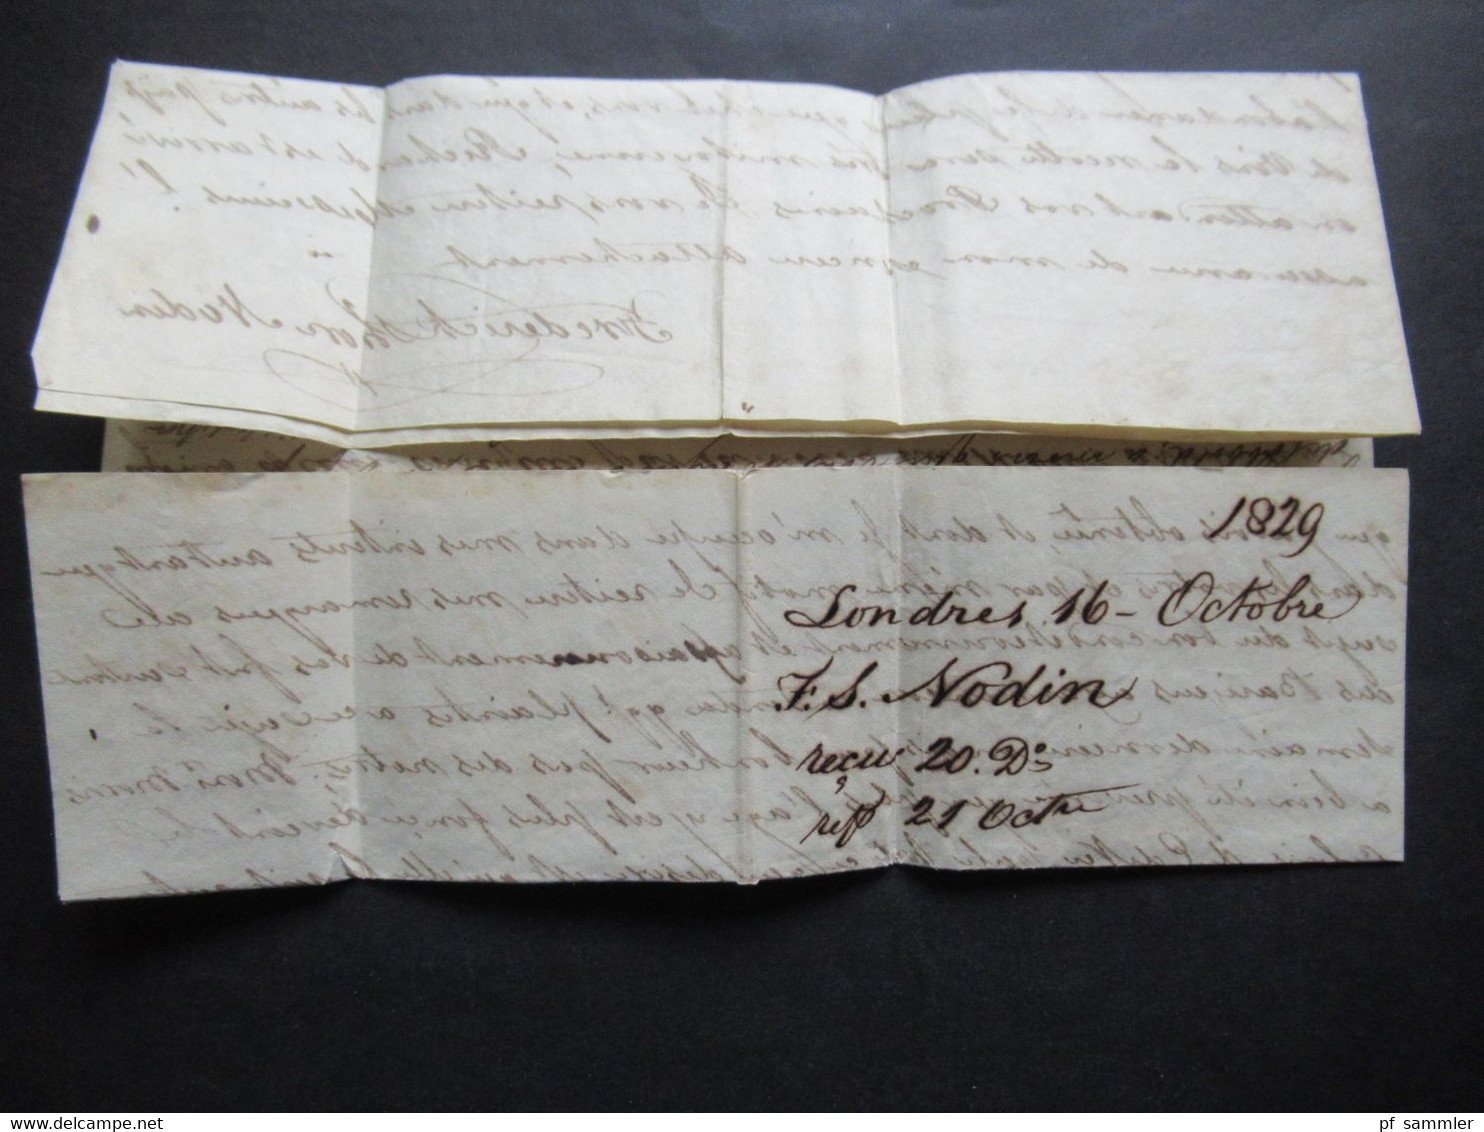 Frankreich 1829 Transitbrief aus England London roter L1 Angl. Est. handschriftlich per Estafette / Eilbrief nach Cognac